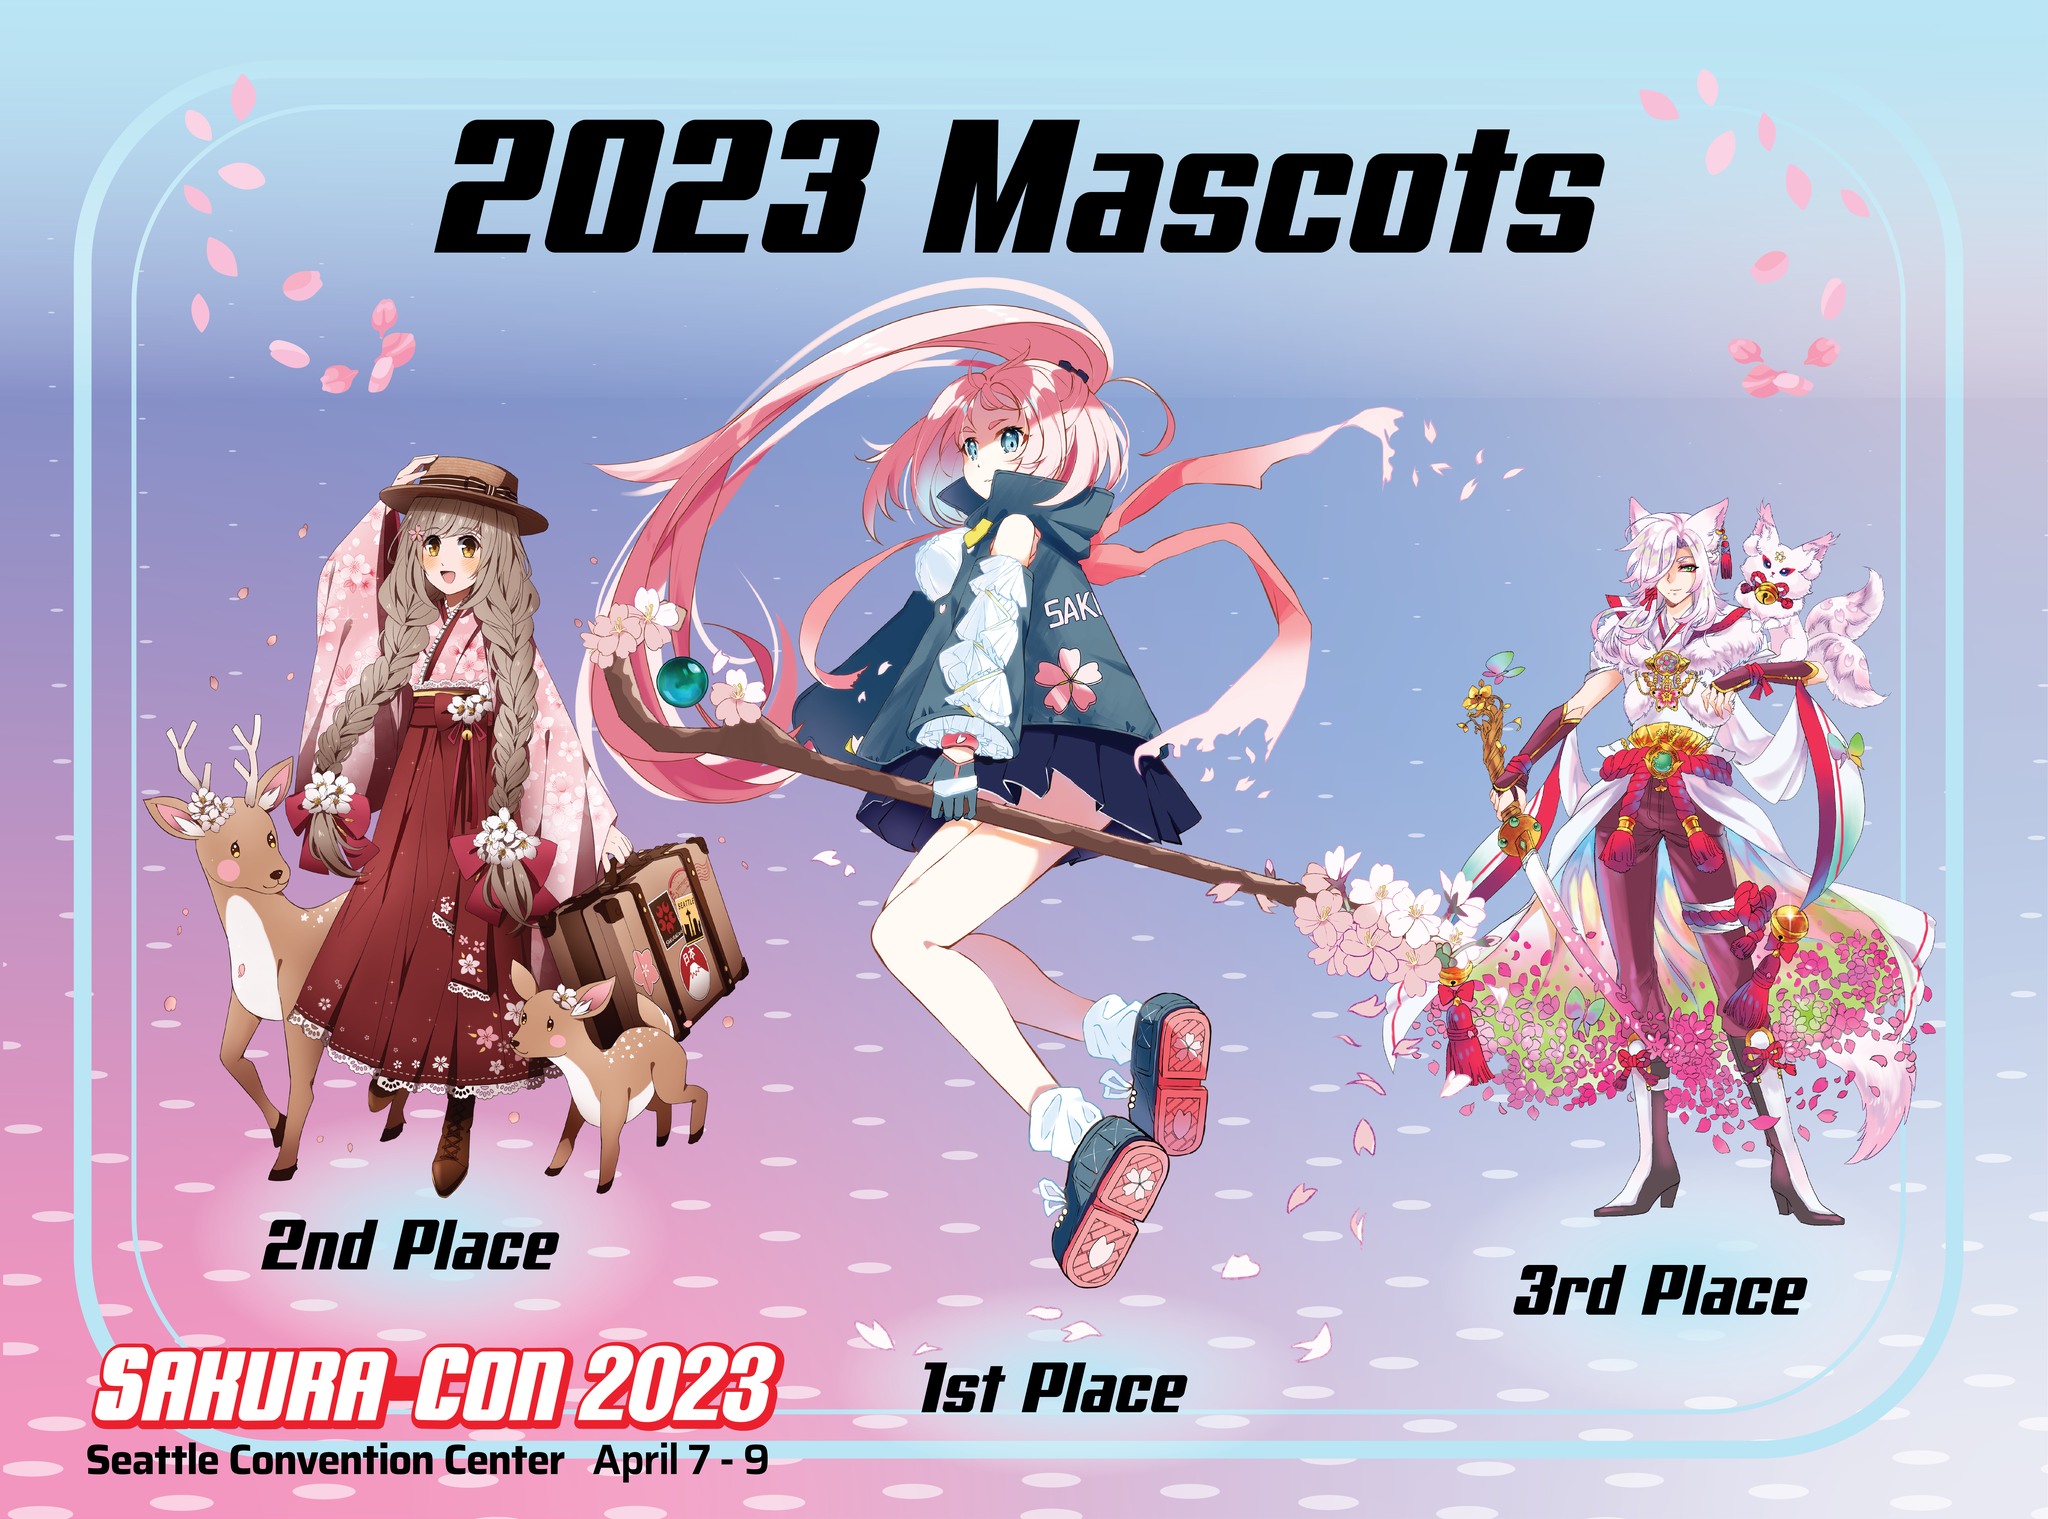 Sakura Con 2023 Mascot Reveal SakuraCon